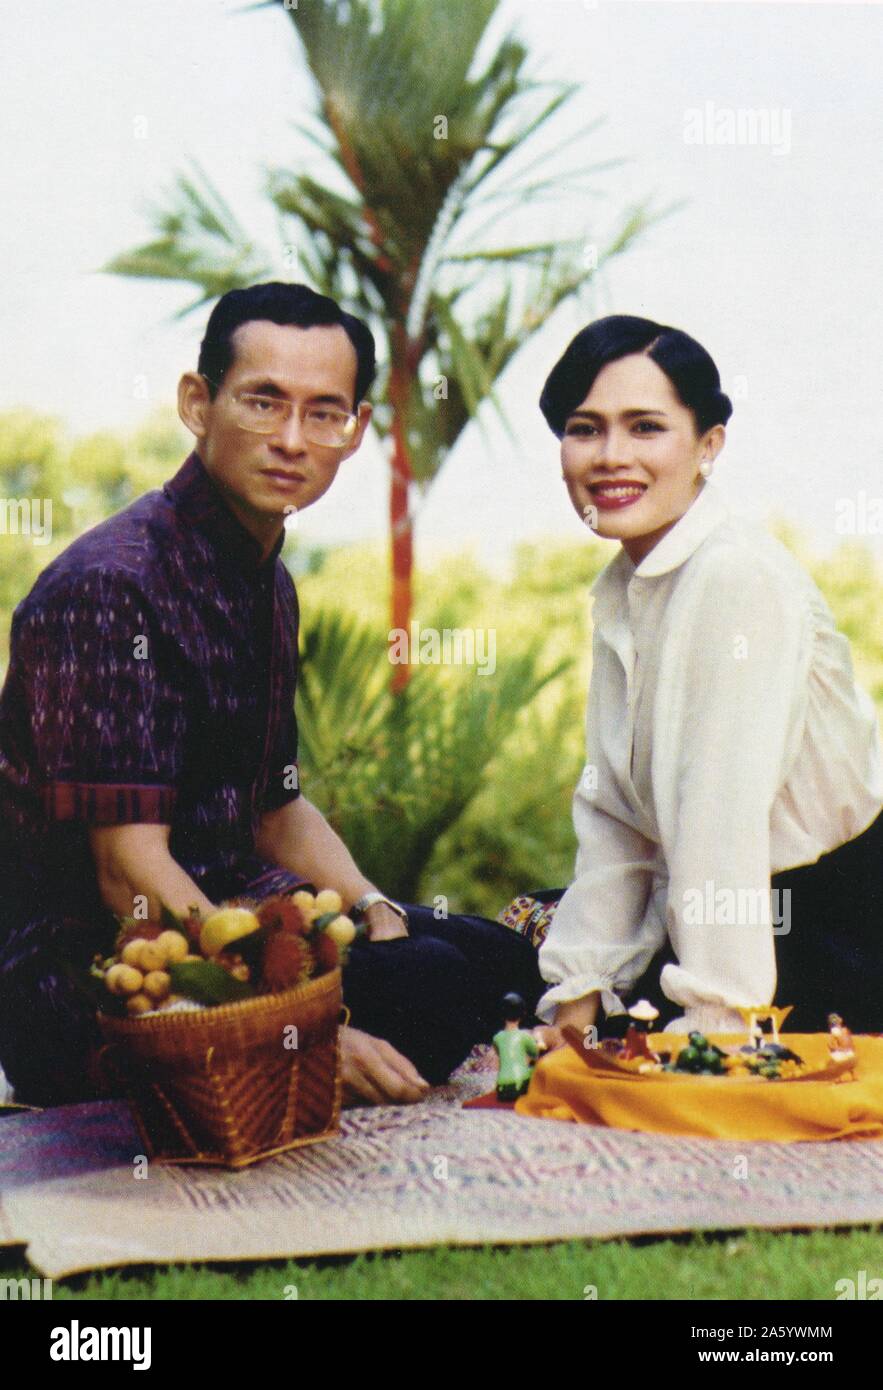 Bhumibol Adulyadej (né en 1927), Roi de Thaïlande. Il est également connu sous le nom de Rama IX, comme il est le neuvième monarque de la dynastie Chakri. Ayant régné depuis le 9 juin 1946 avec son épouse la reine Sirikit. 1960 Banque D'Images